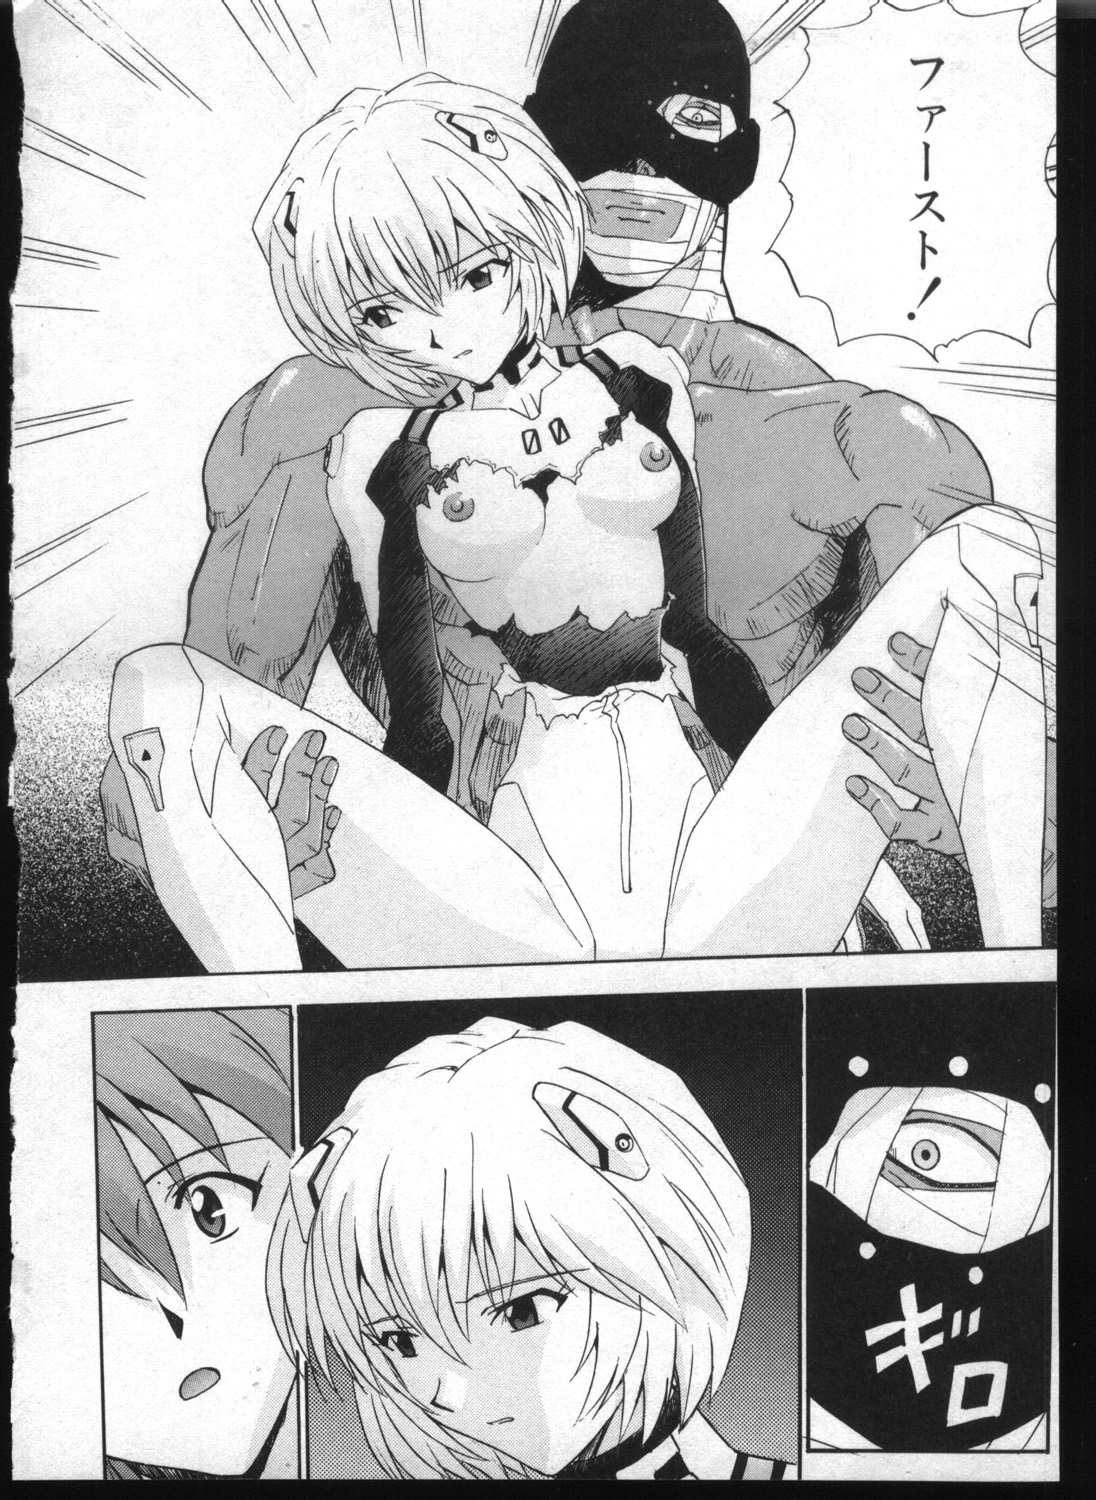 [Anthology] Shitsurakuen 7 | Paradise Lost 7 (Neon Genesis Evangelion) page 8 full